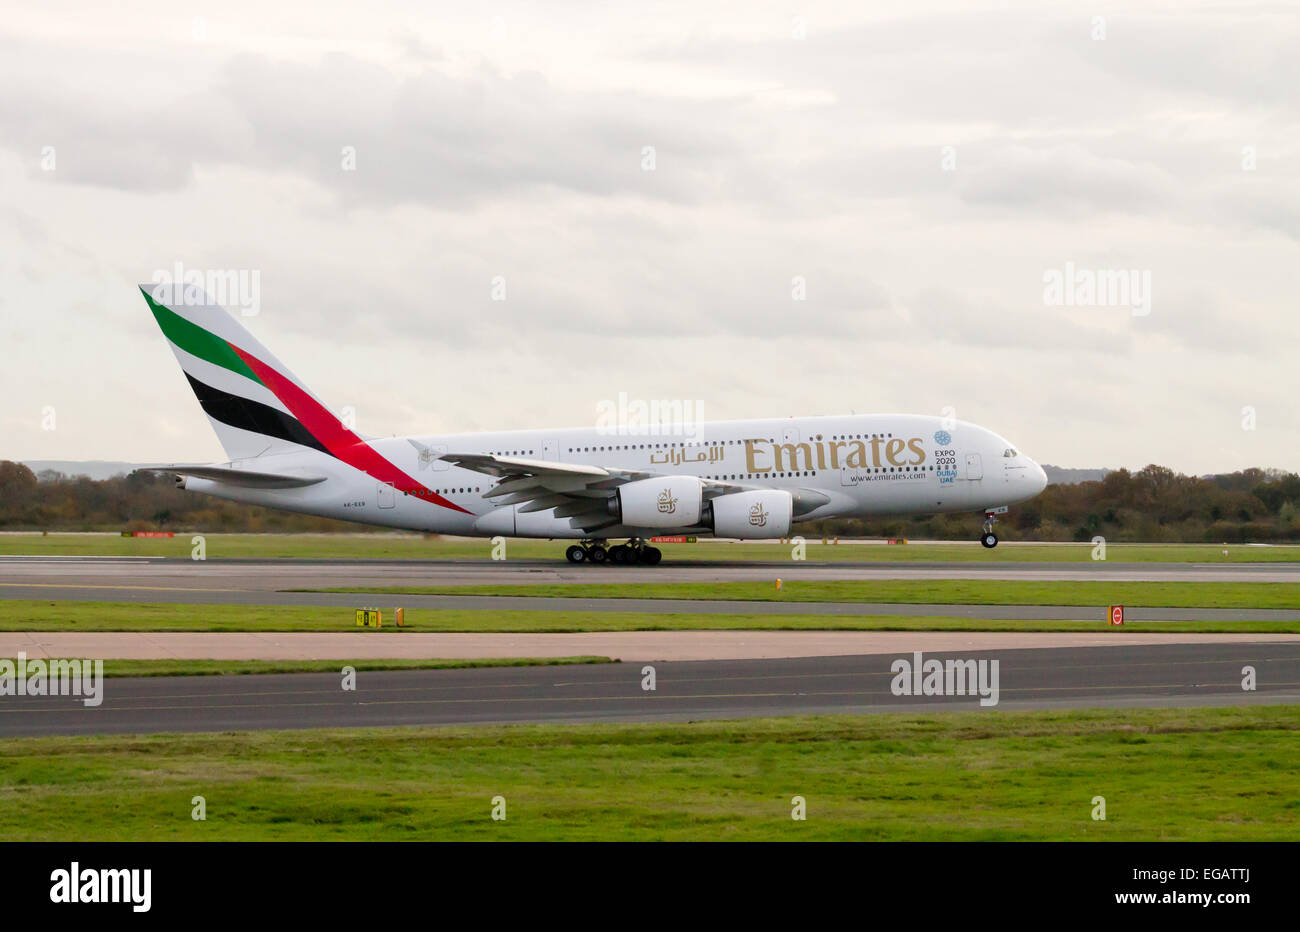 Unis Airbus A380, qui a décollé de l'aéroport de Manchester. Banque D'Images